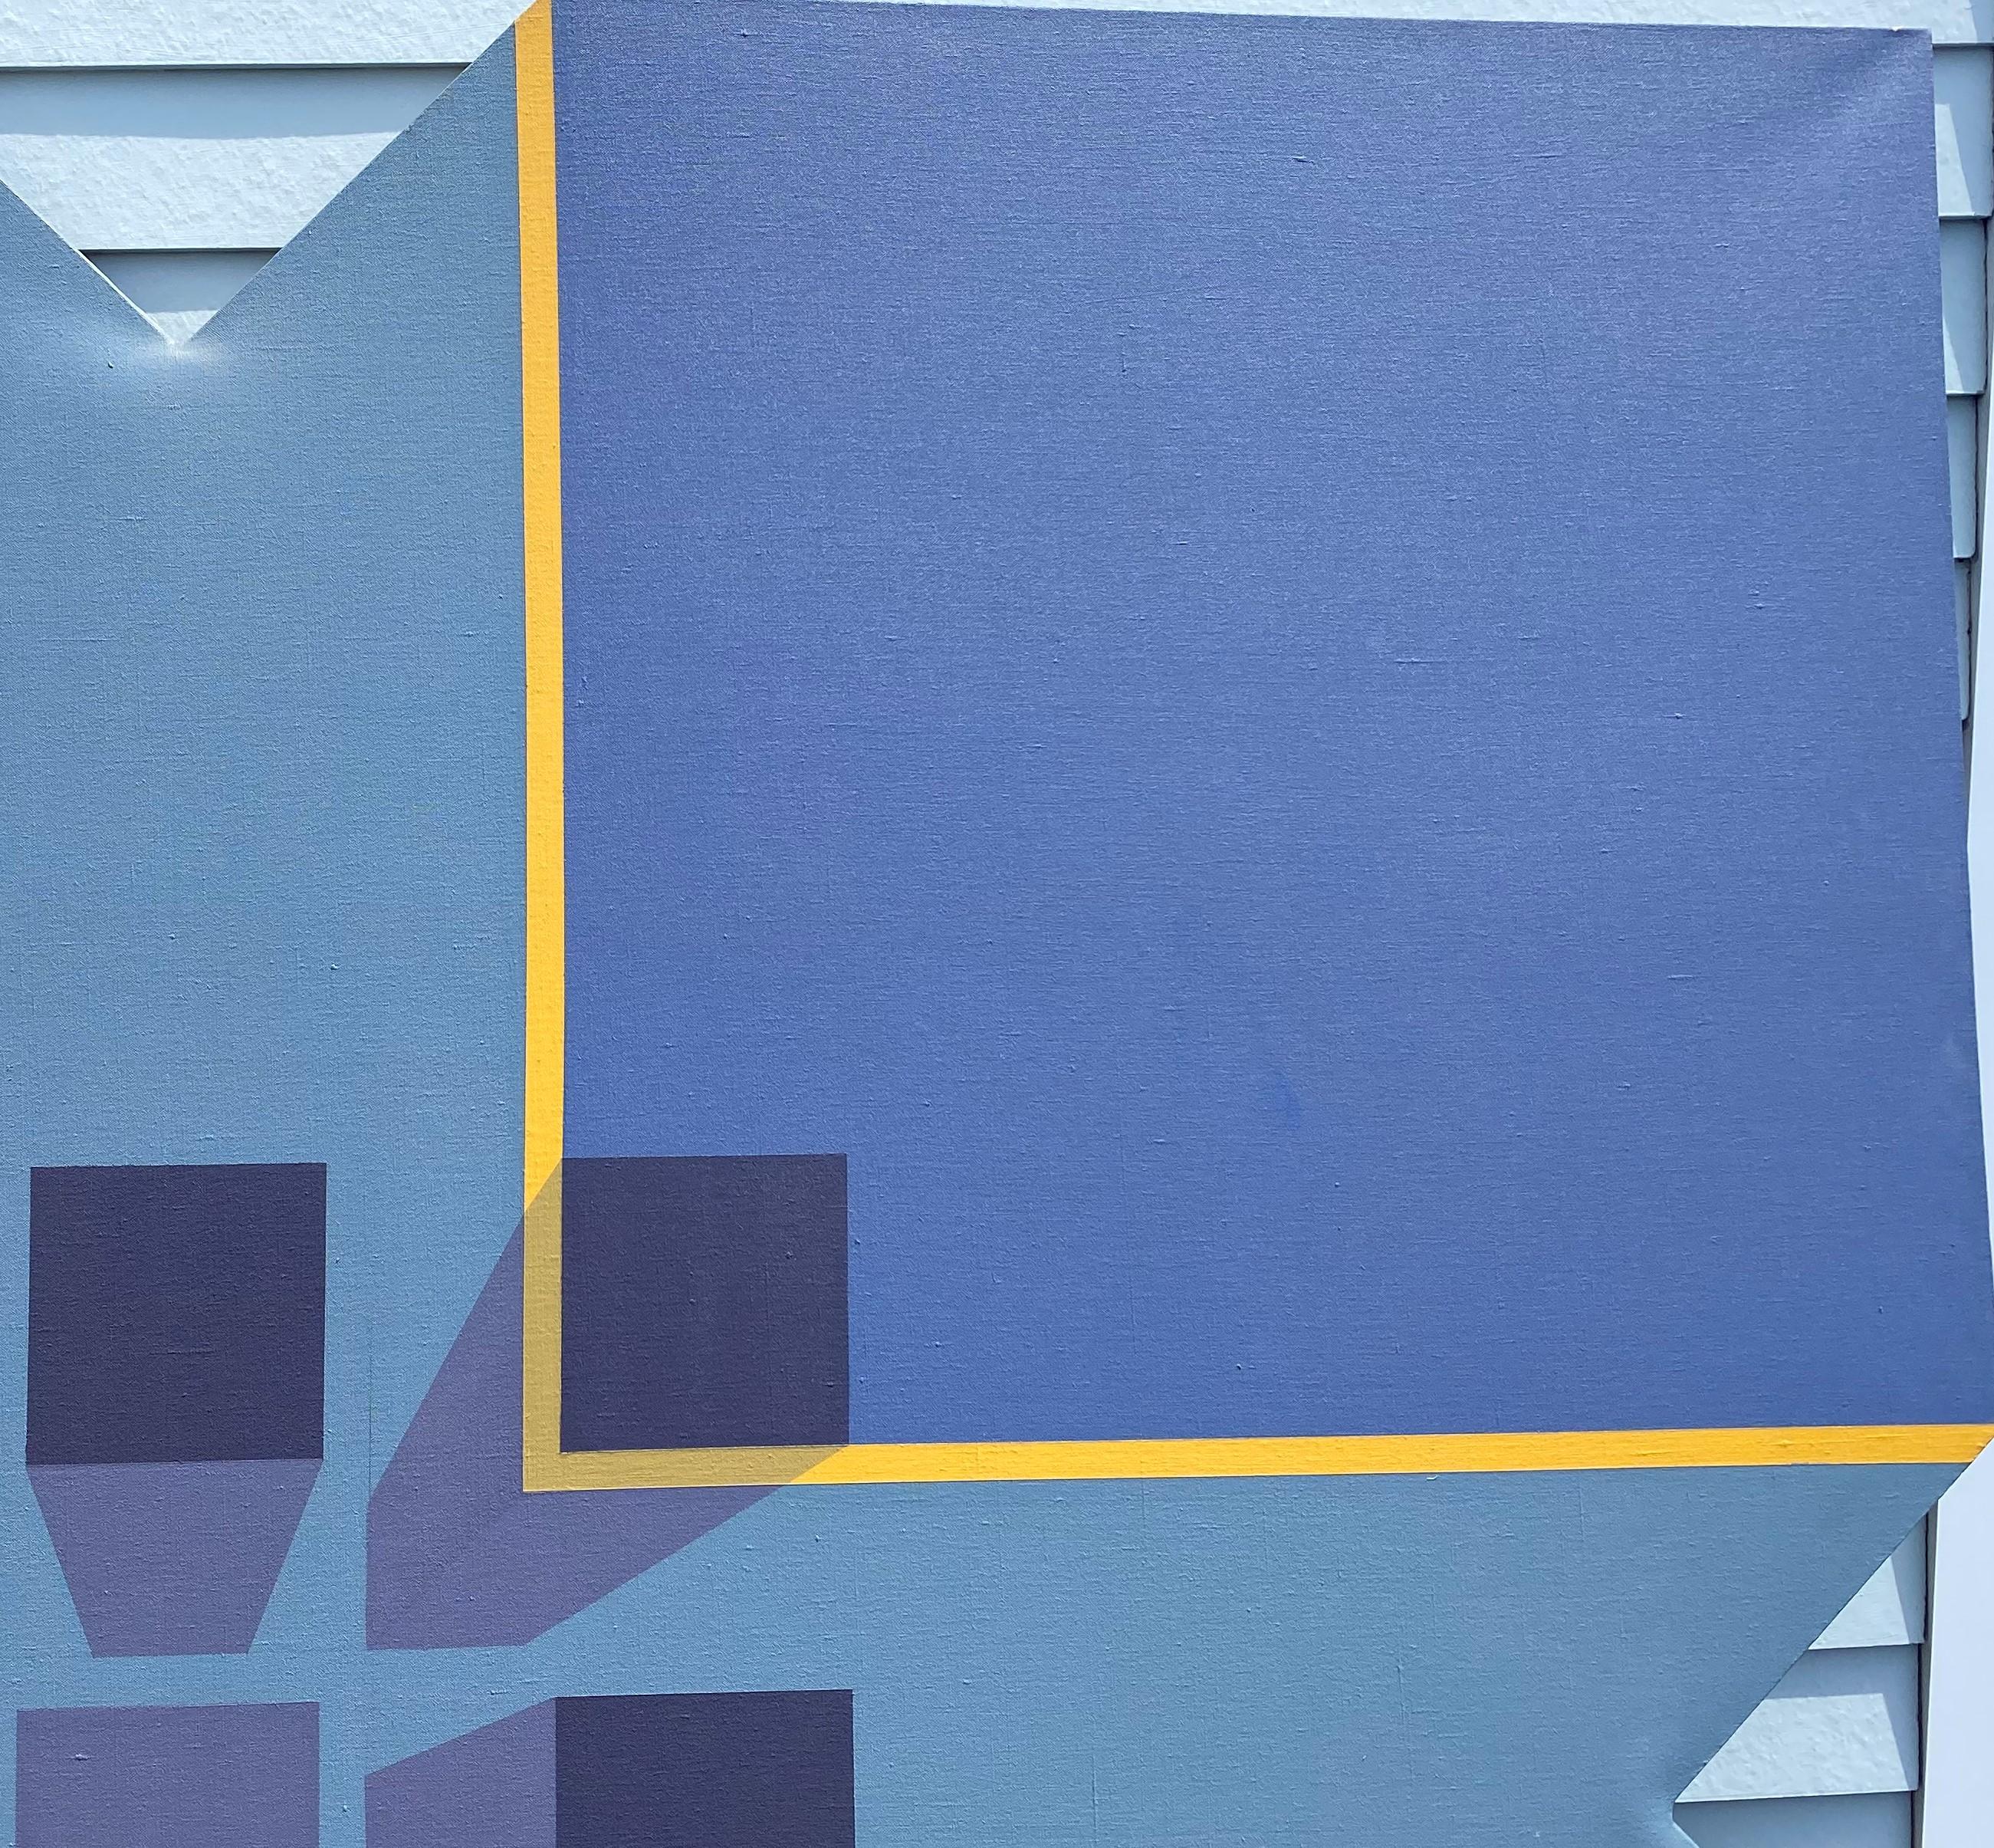 Ein schönes, großes, perspektivisches, abstraktes Ölgemälde der Amerikanischen Schule in Blau- und Gelbtönen mit geometrischen Formen, einem zentralen quadratischen Brennpunkt und einem maßgefertigten Rahmen mit dreieckigen Ausschnitten auf jeder